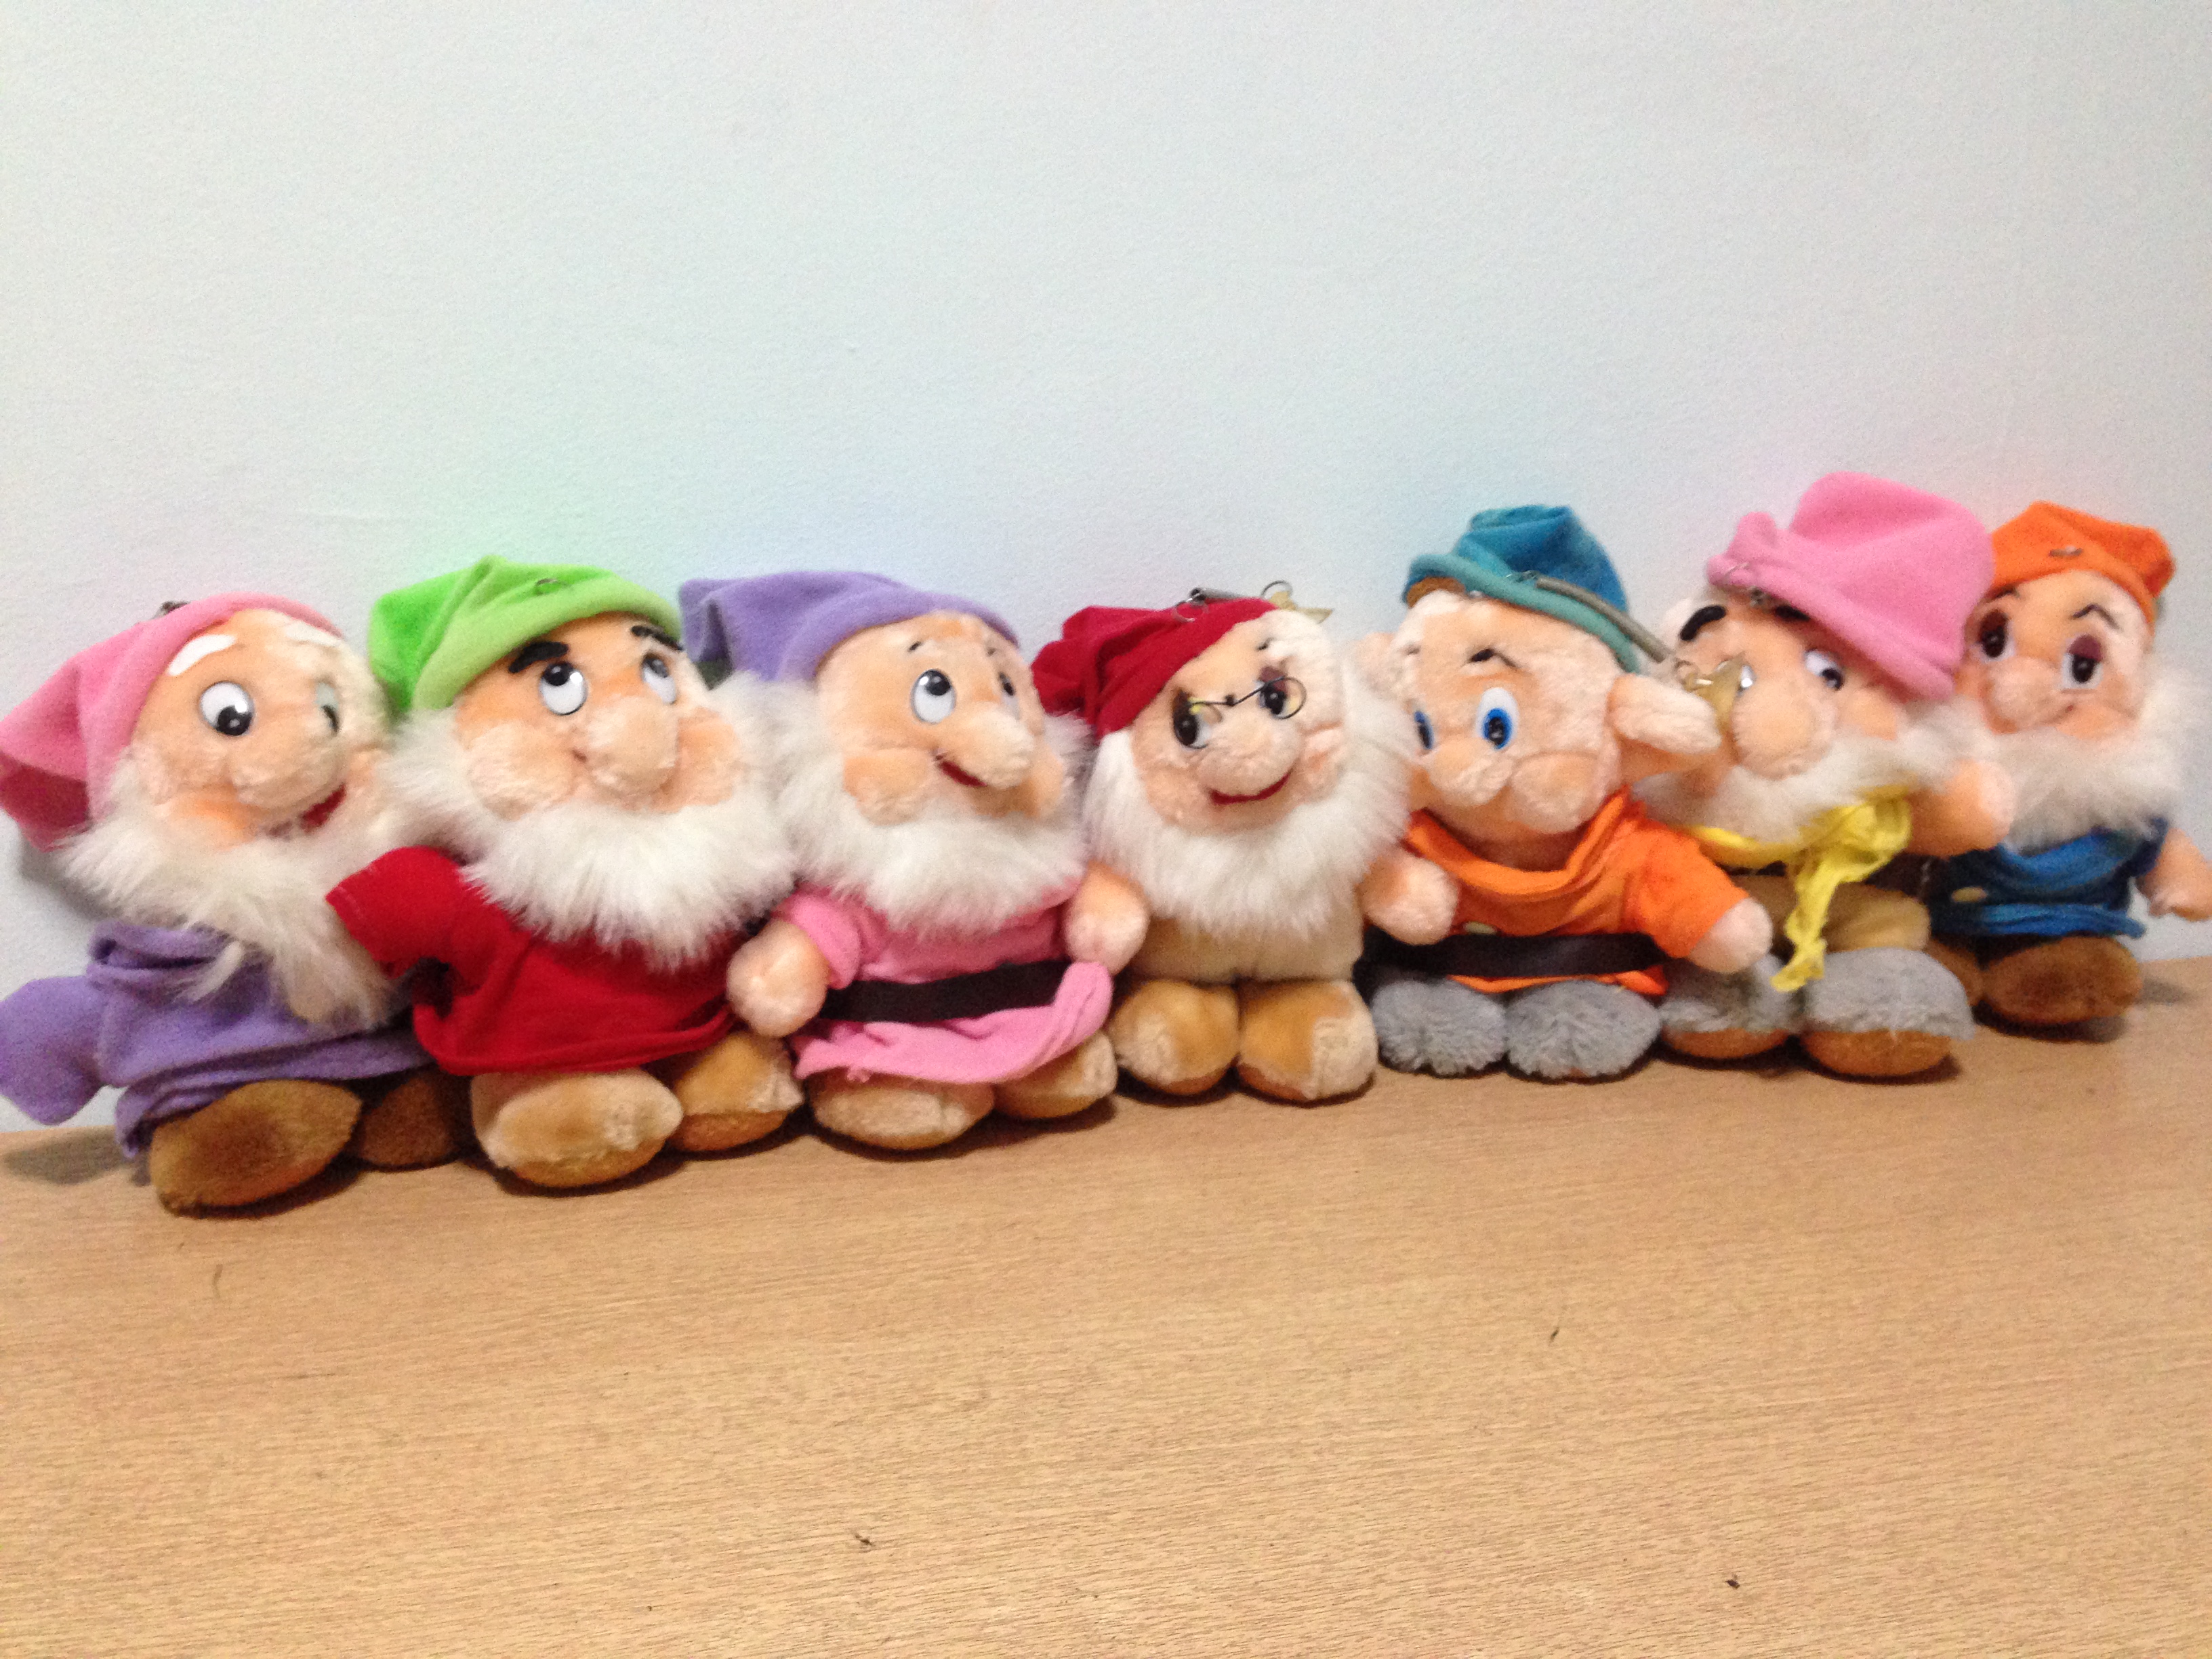 7 dwarfs stuffed toys